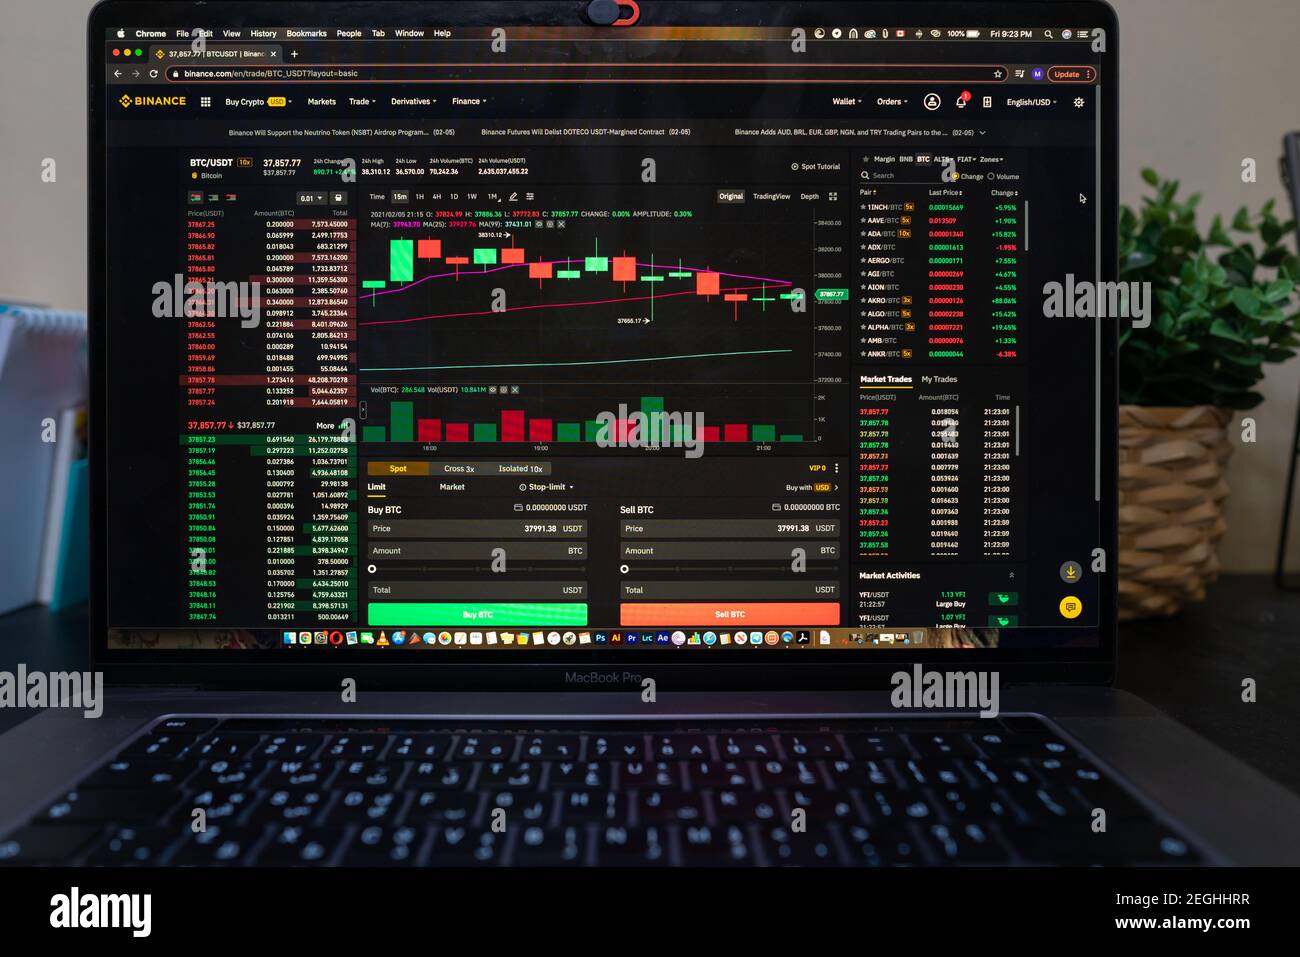 best laptop for stock trading reddit